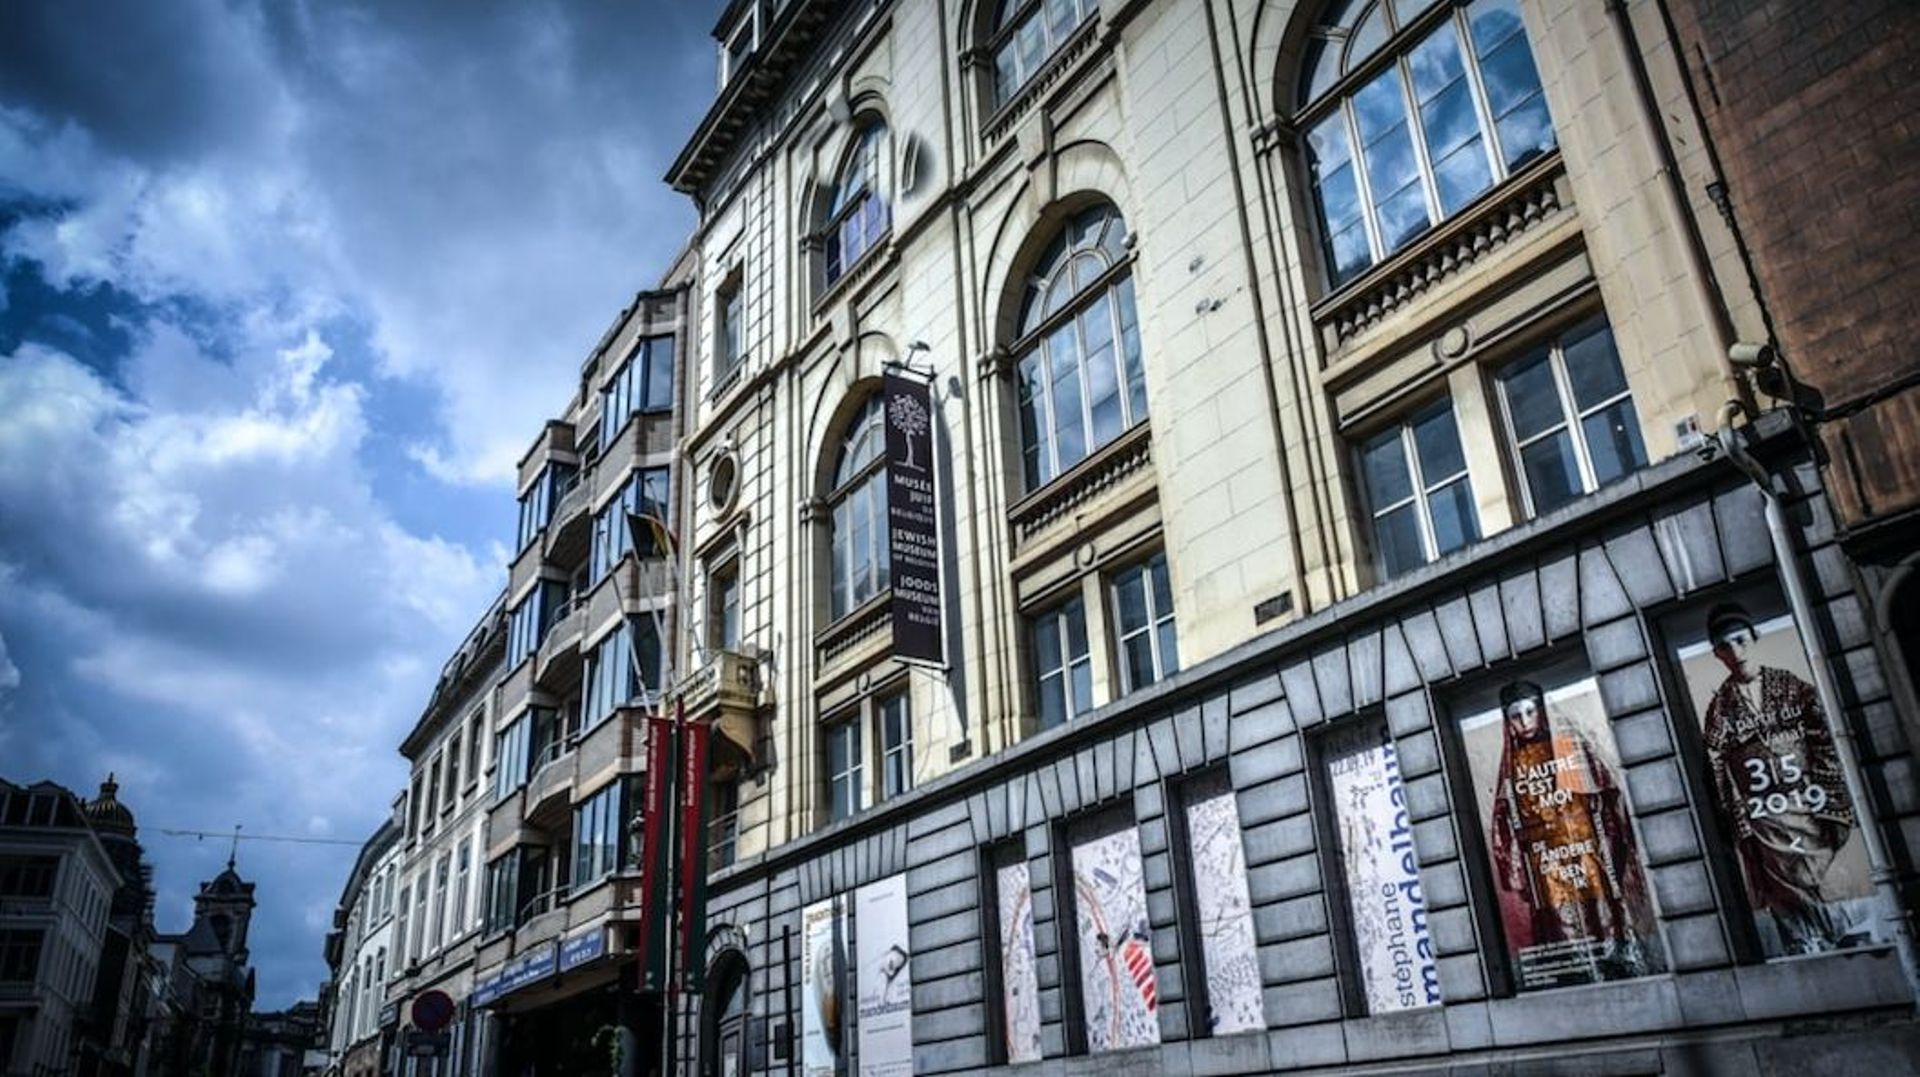 Les travaux pour l'aménagement d'un nouveau Musée juif de Belgique, situé rue des Minimes dans le quartier du Sablon à Bruxelles, débuteront dans le courant de l'année 2023.